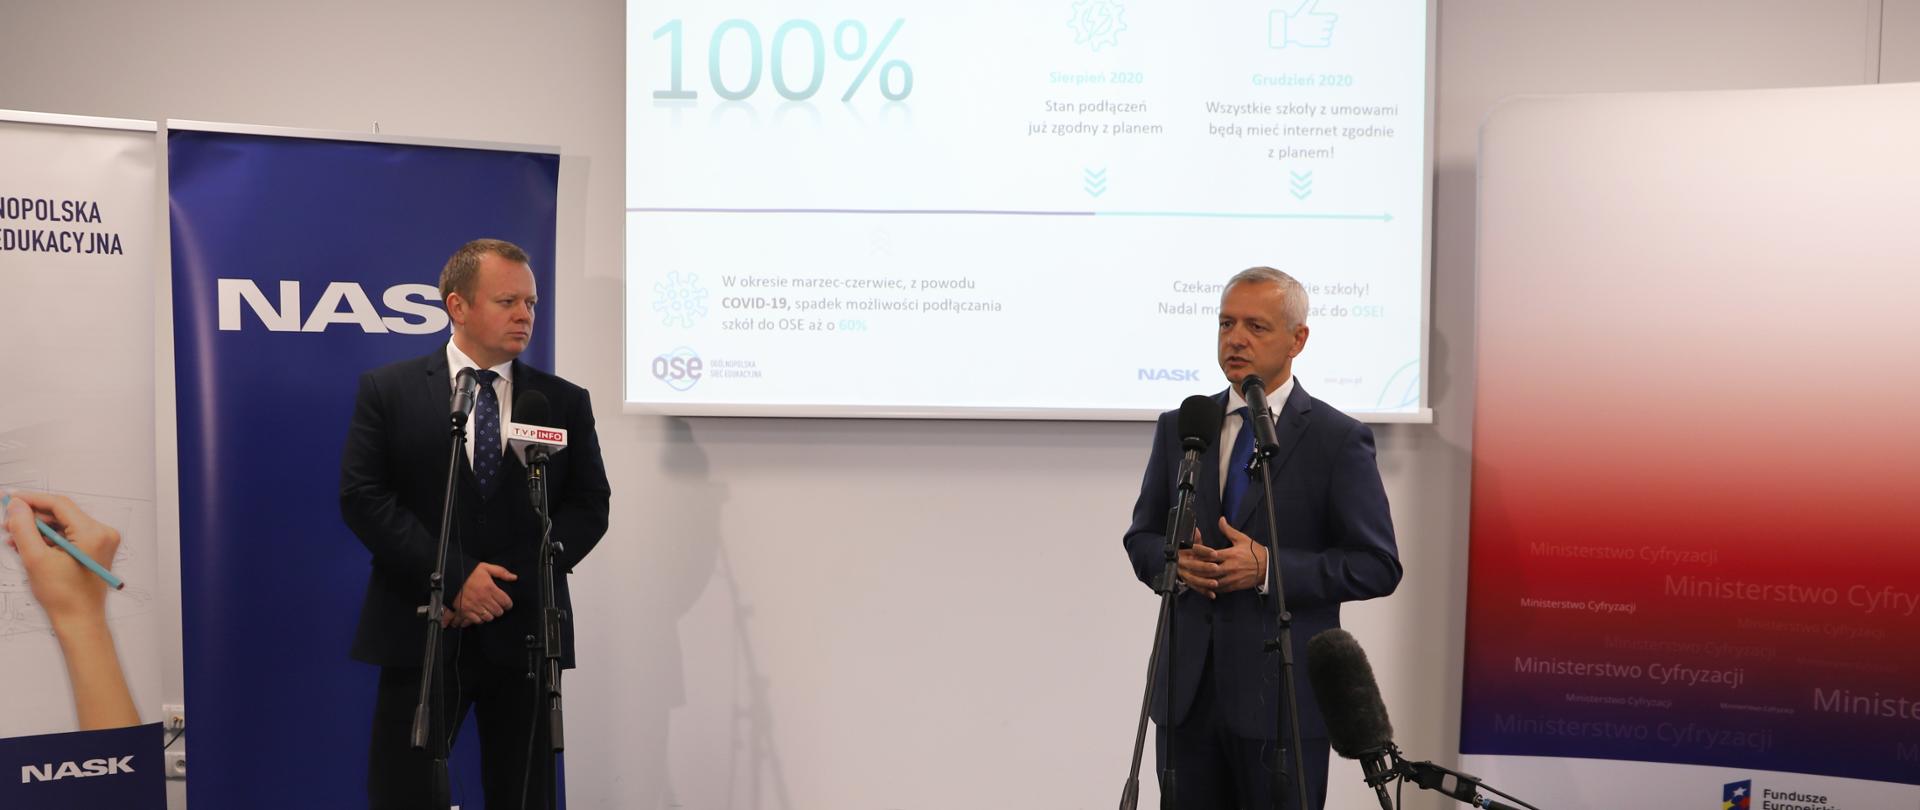 Minister cyfryzacji Marek Zagórski i dyrektor NASK Kamil Sitarski podczas konferencji prasowej, stoją przed mikrofonami.